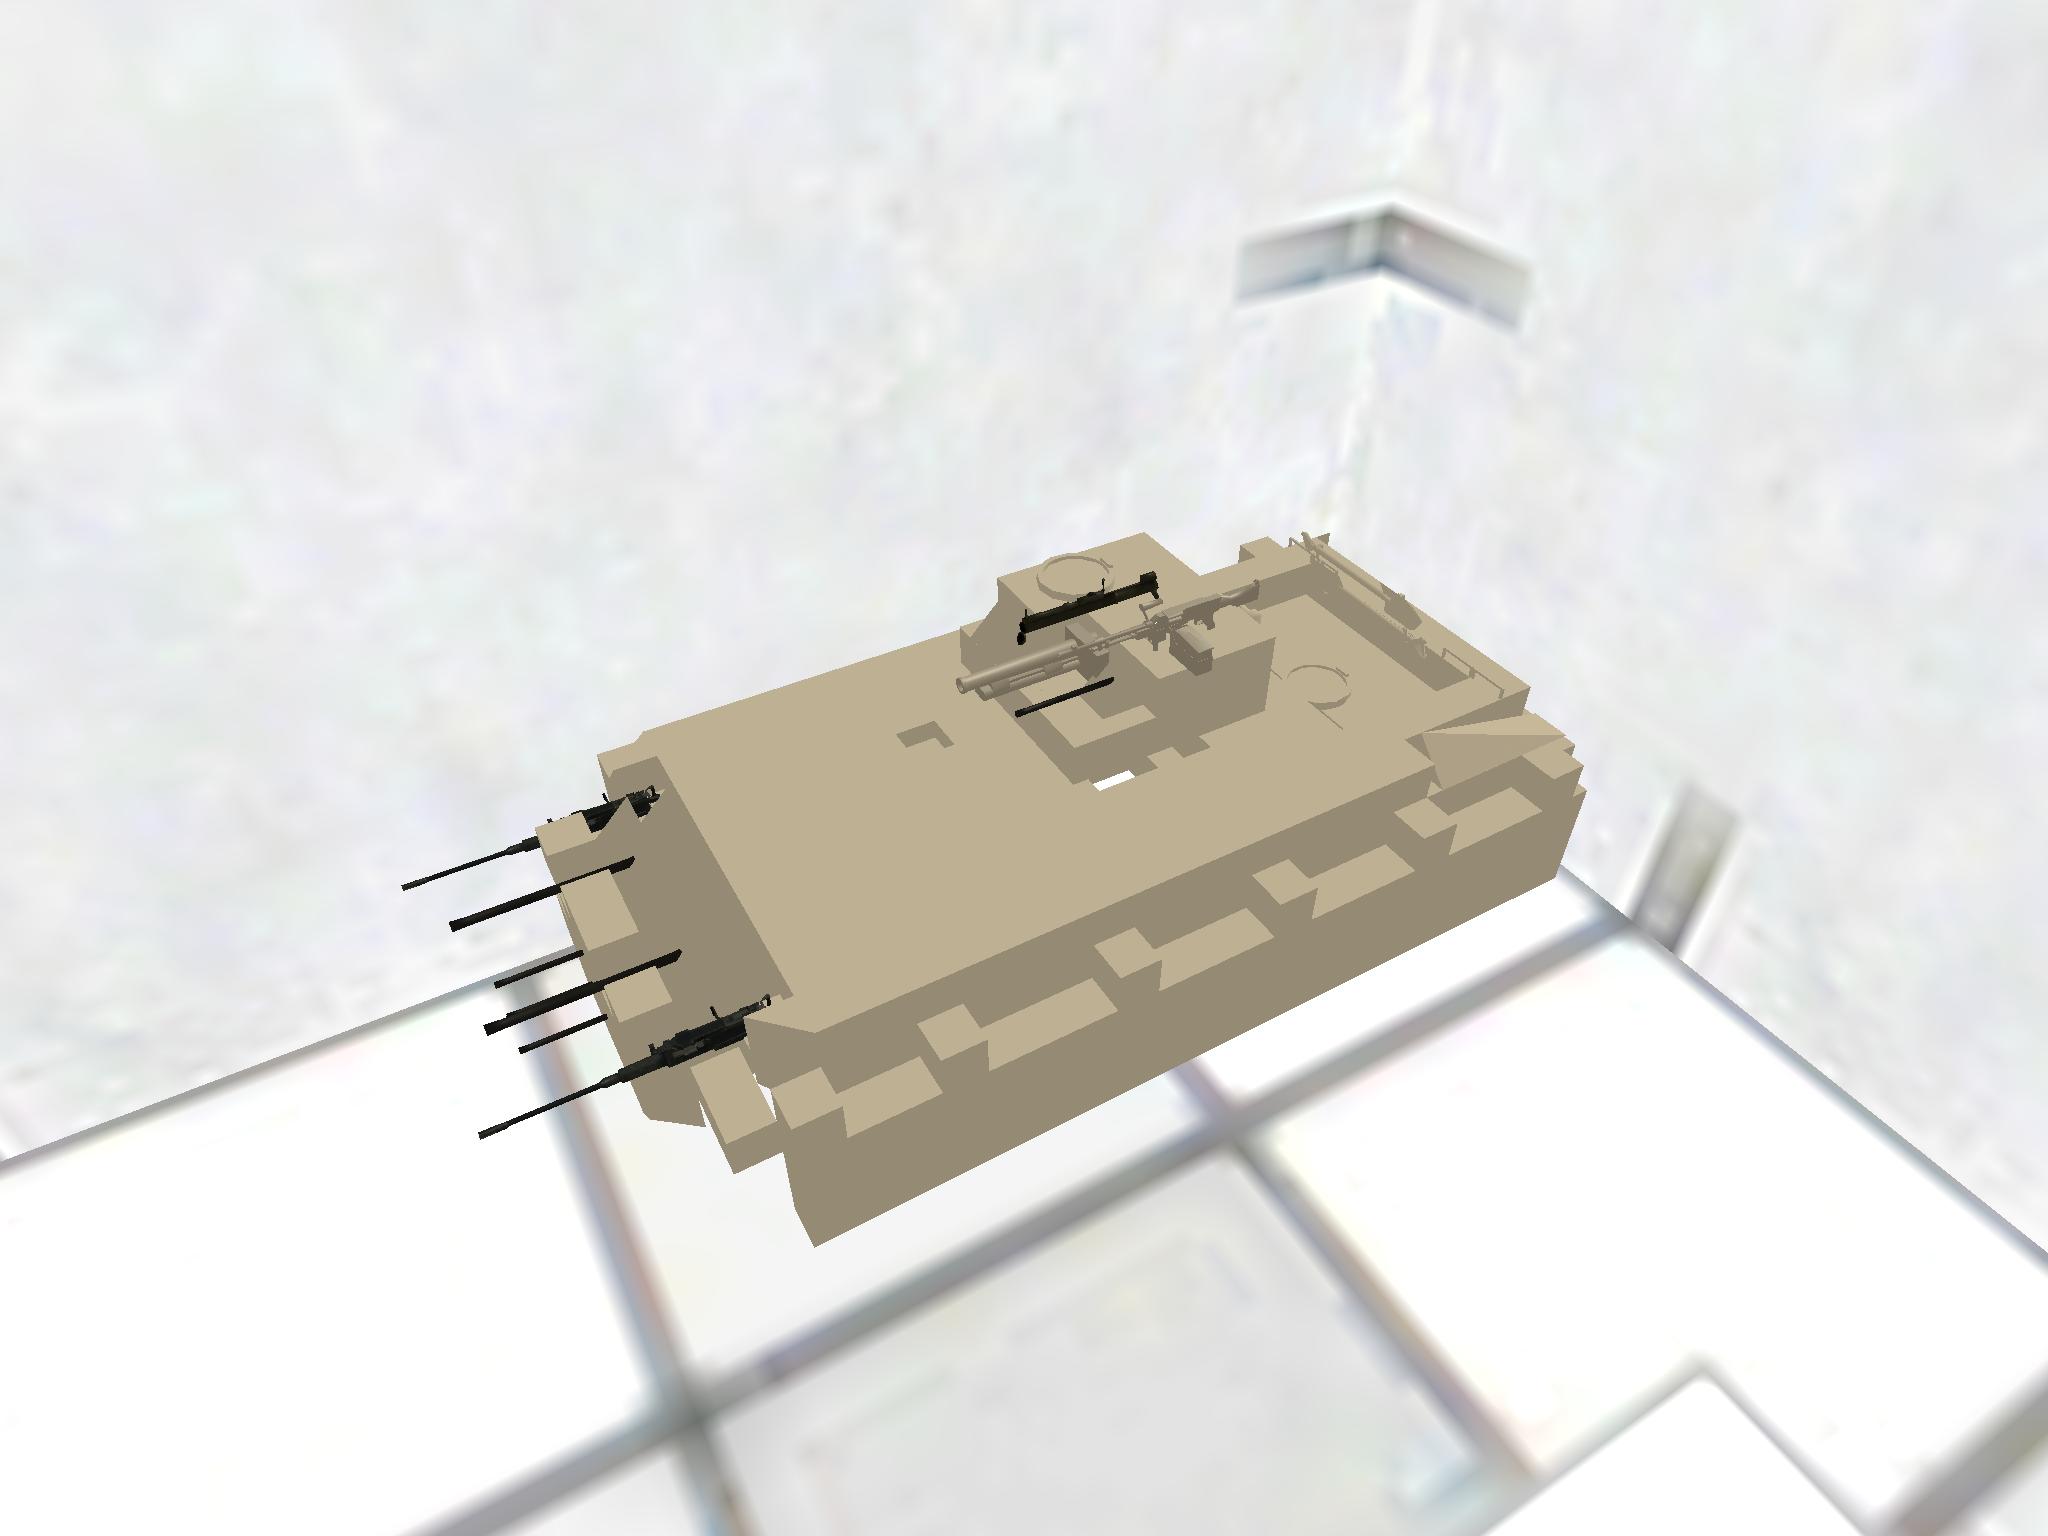 My装甲車